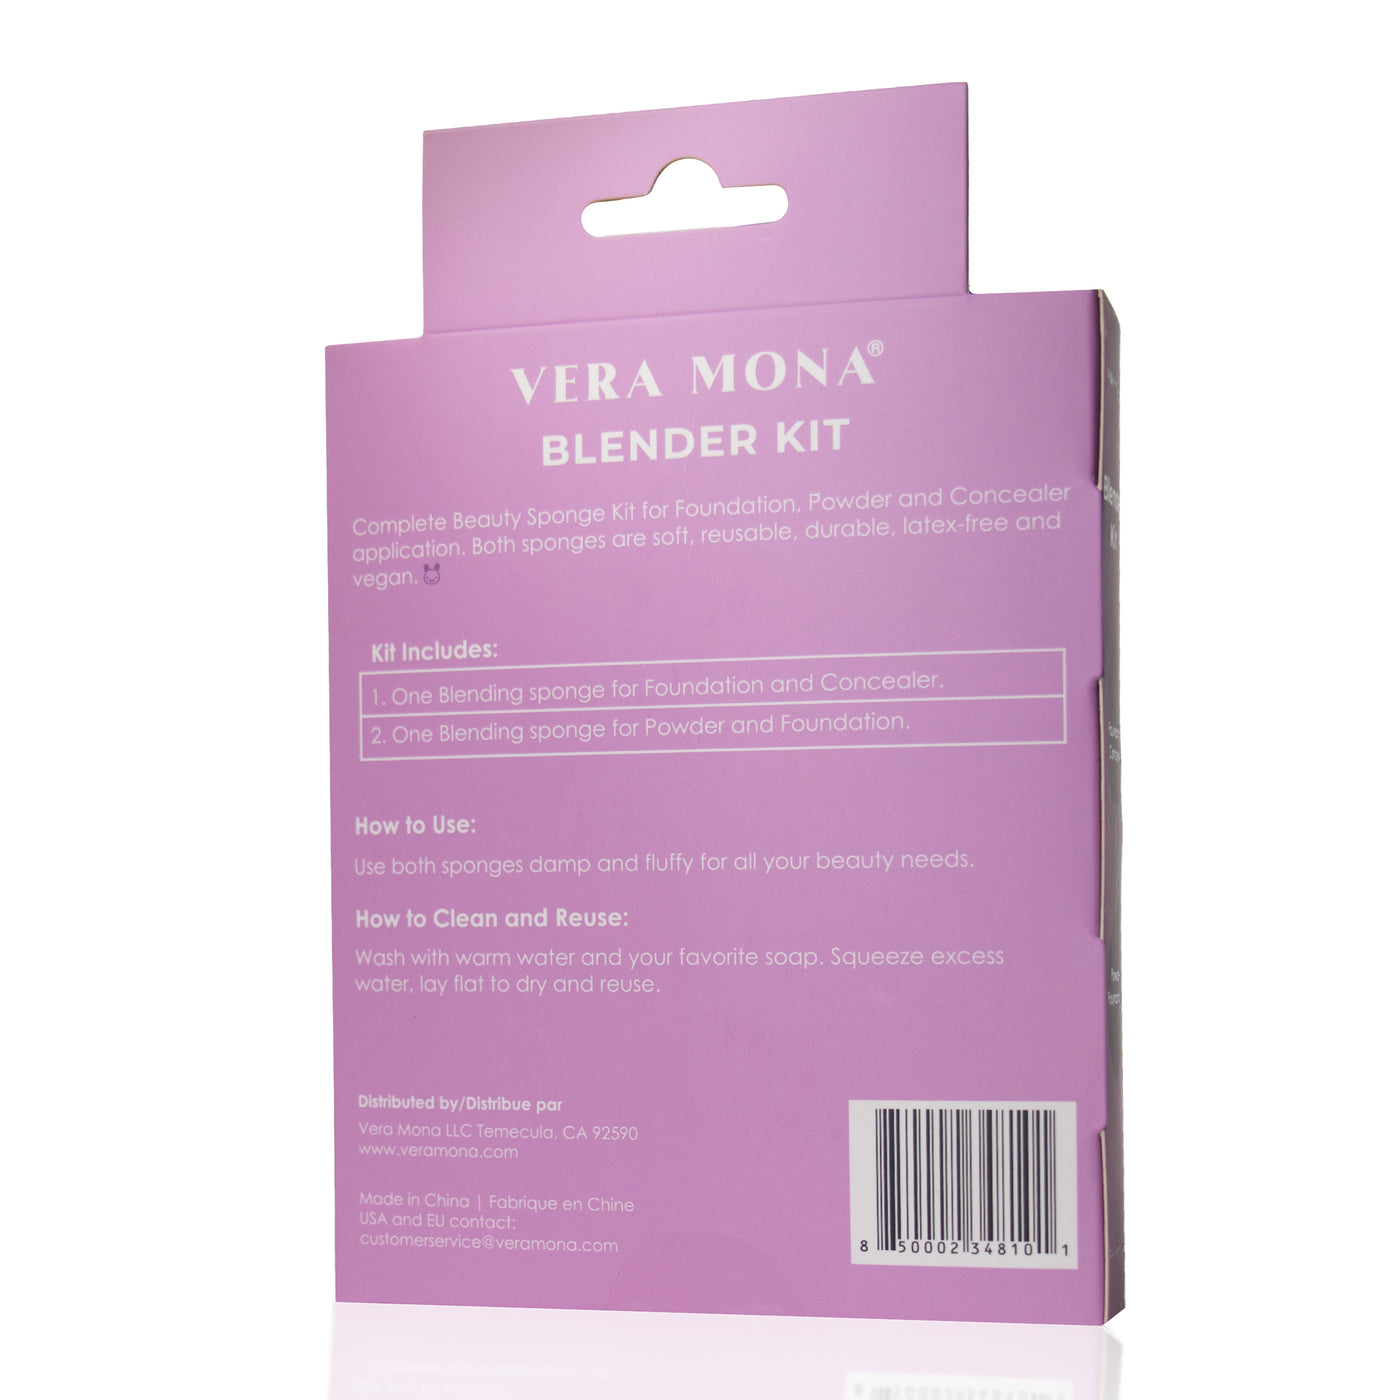 Blender Kit